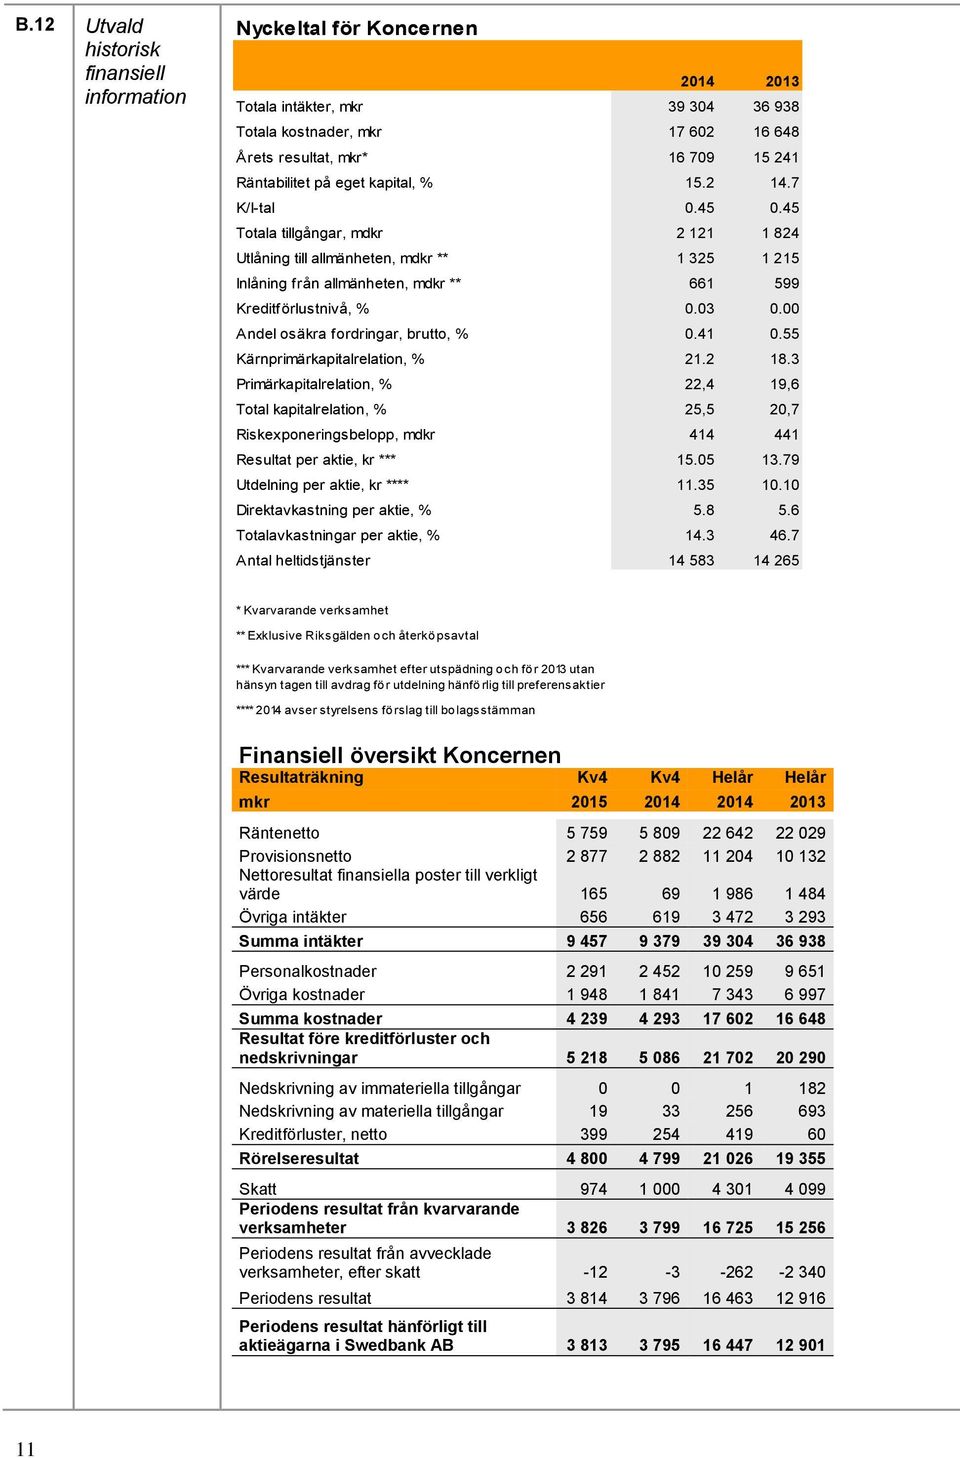 03 0.00 Andel osäkra fordringar, brutto, % 0.41 0.55 Kärnprimärkapitalrelation, % 21.2 18.